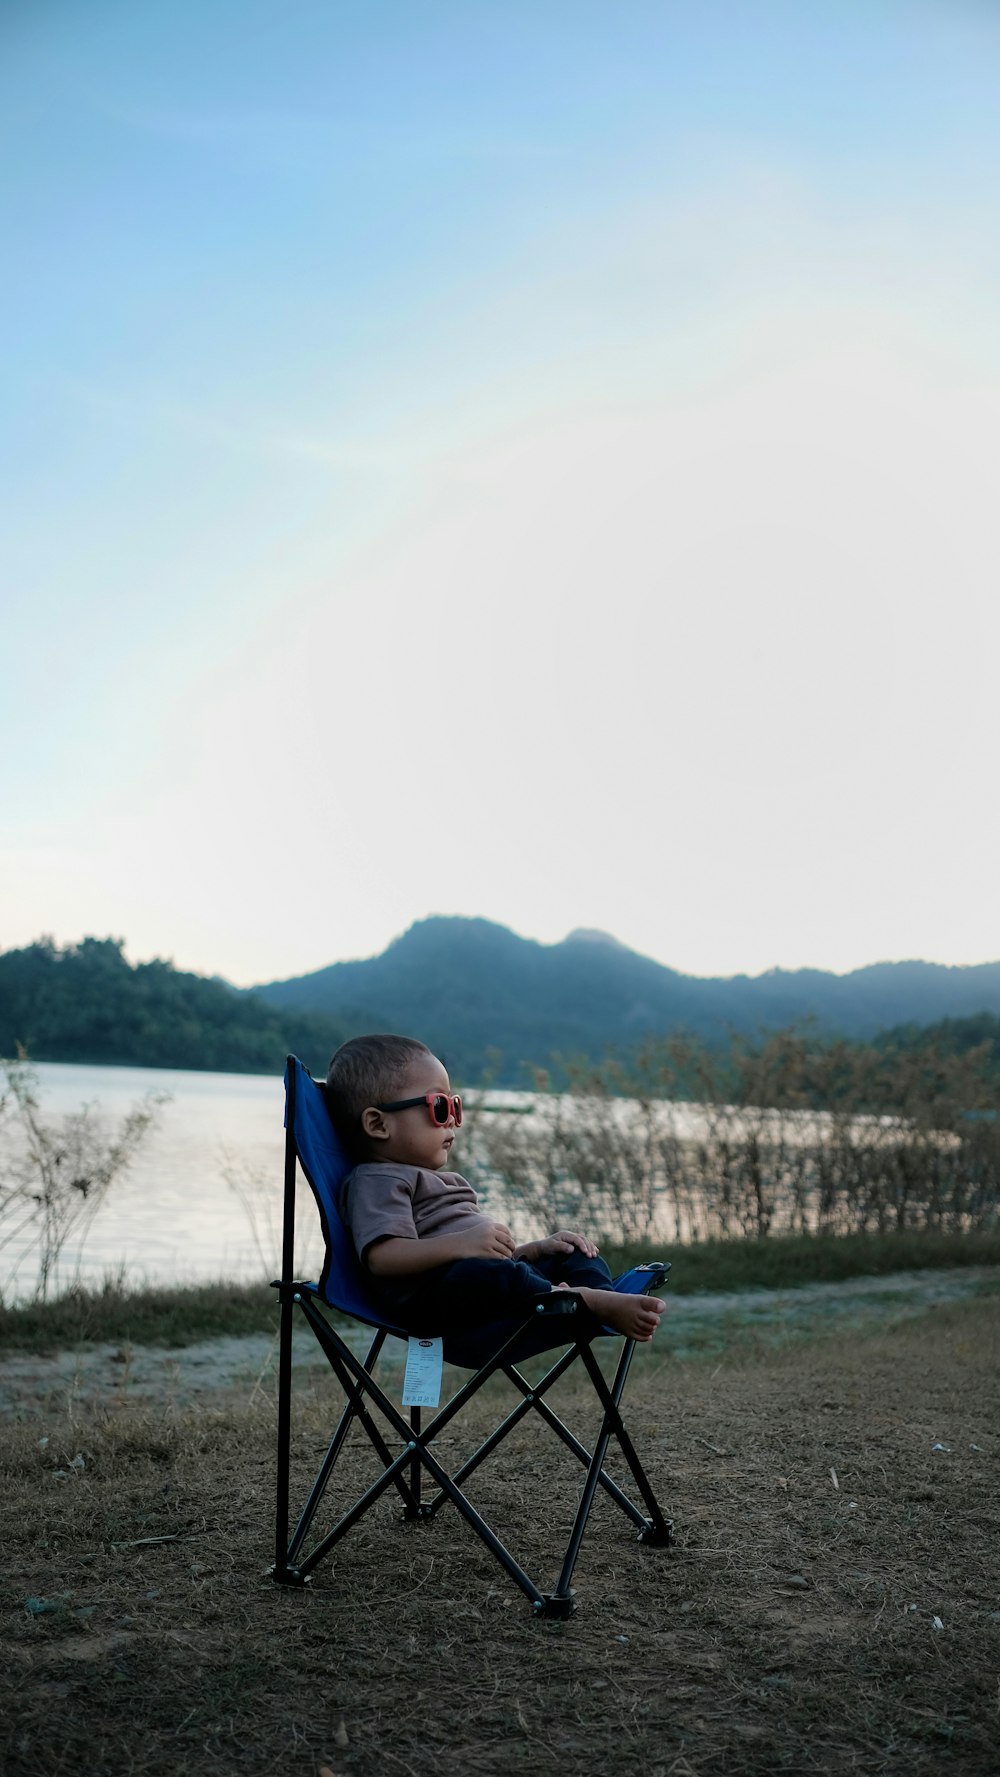 bambino seduto sulla sedia da campeggio nera e blu